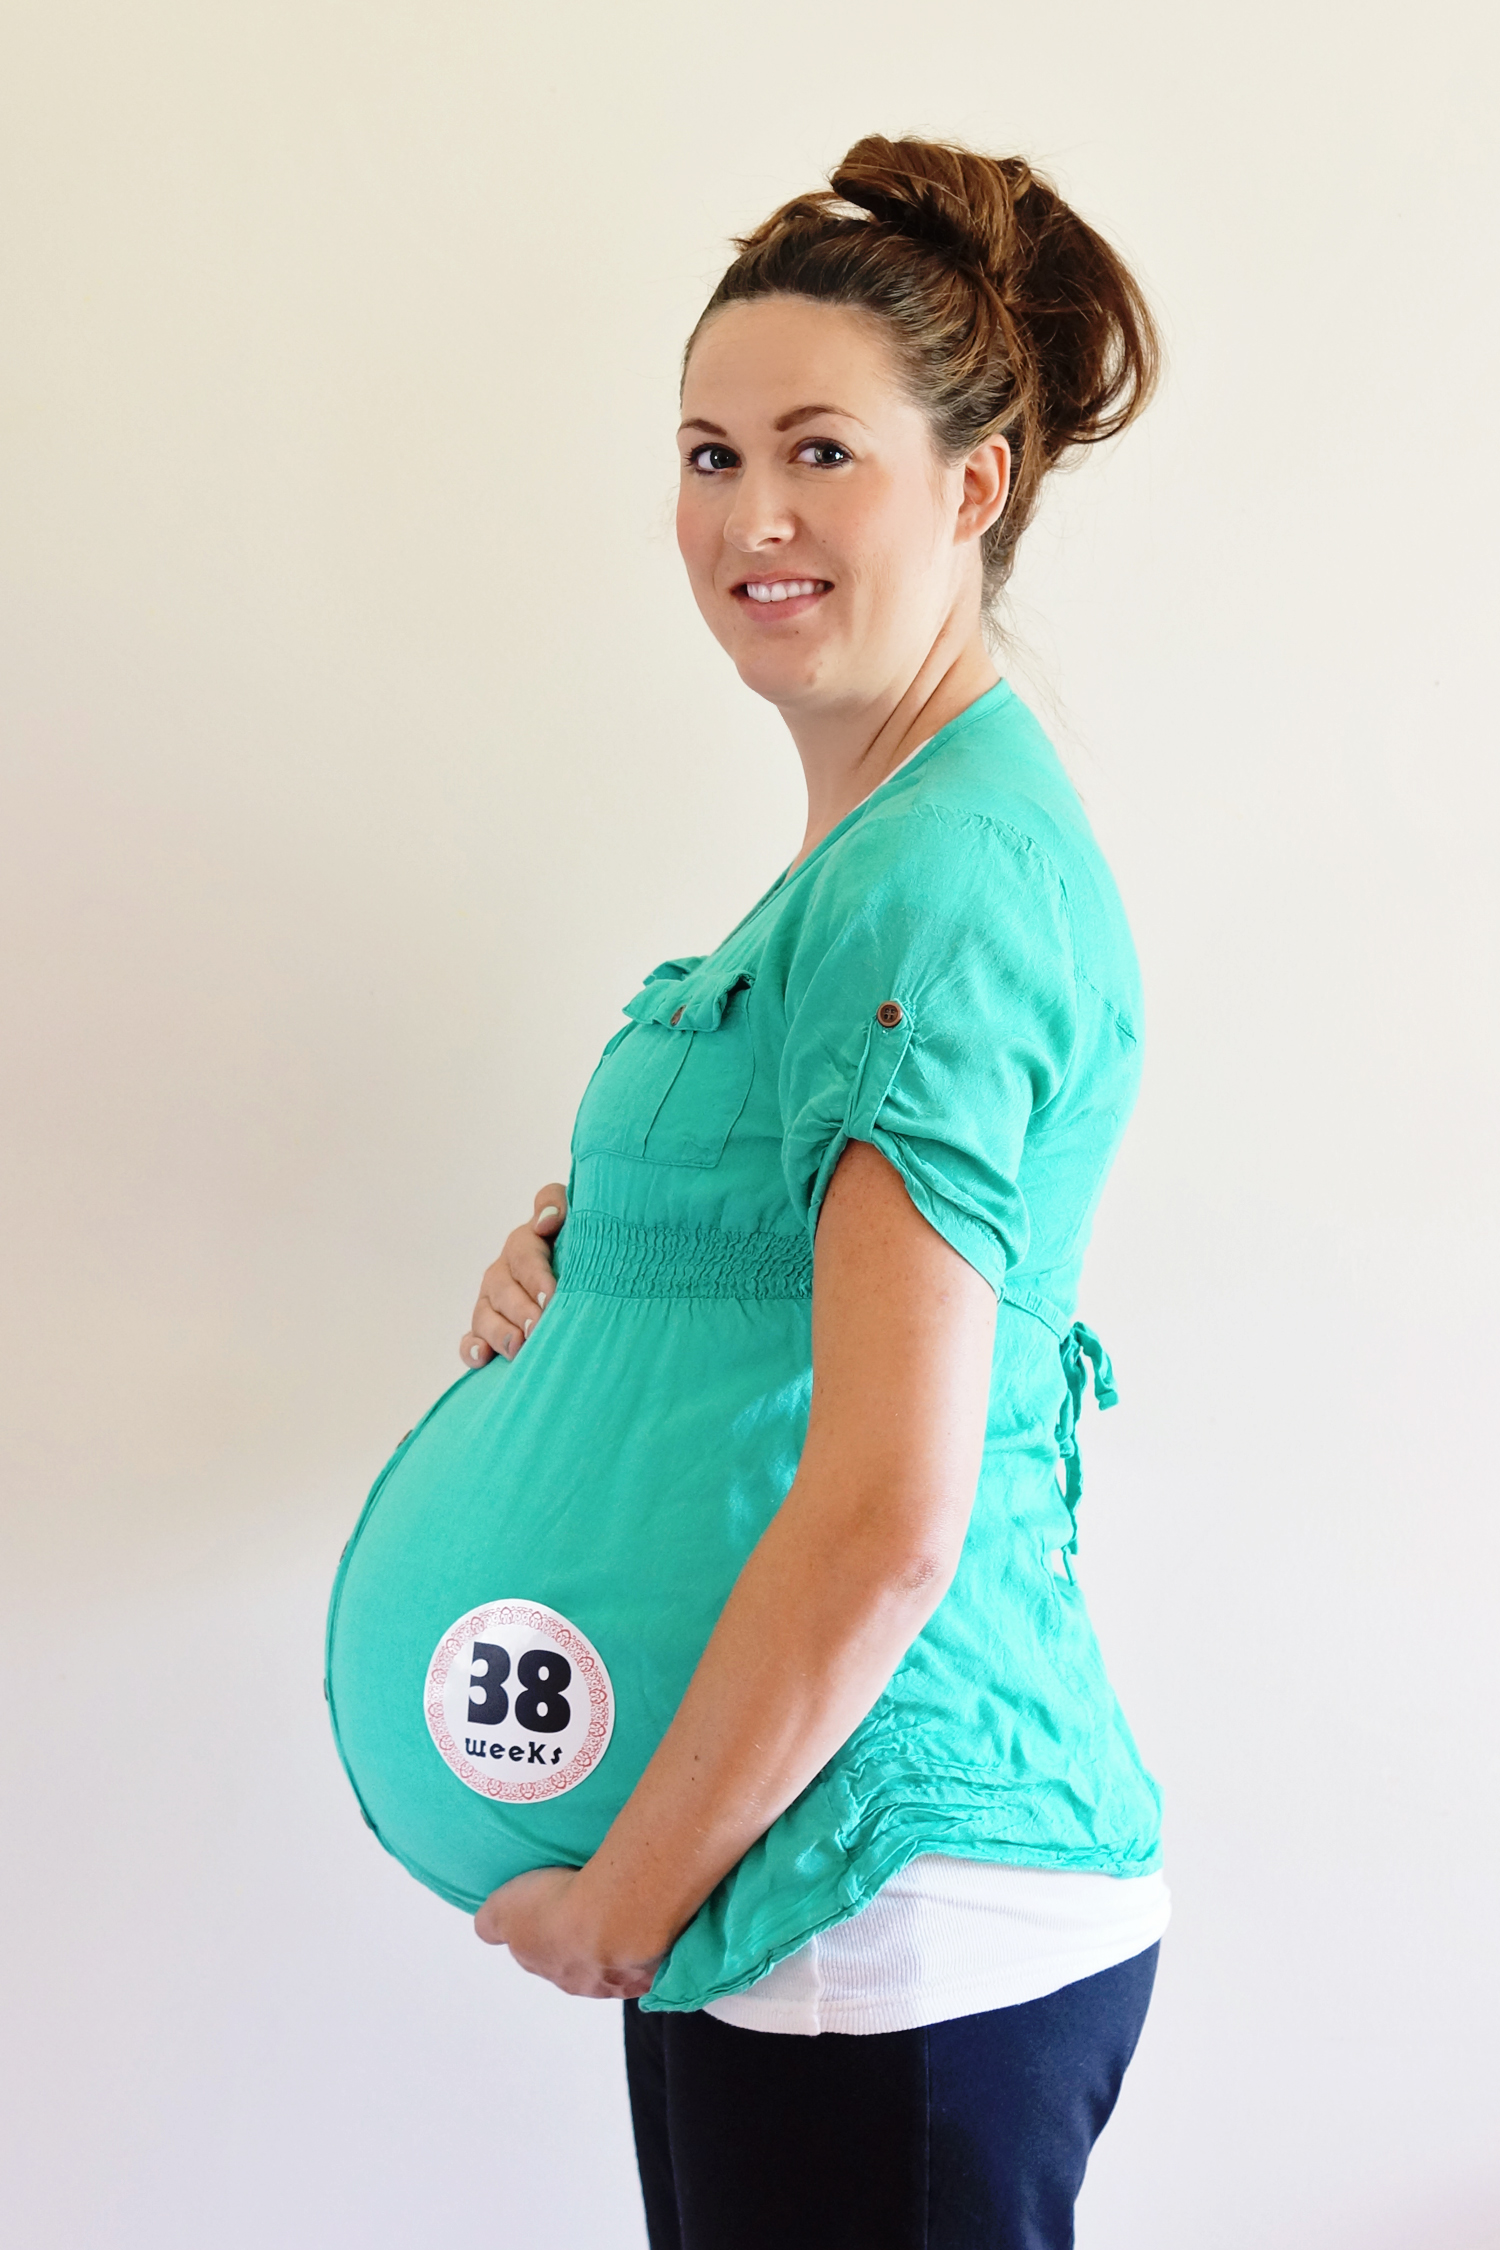 38 weeks pregnancy photos